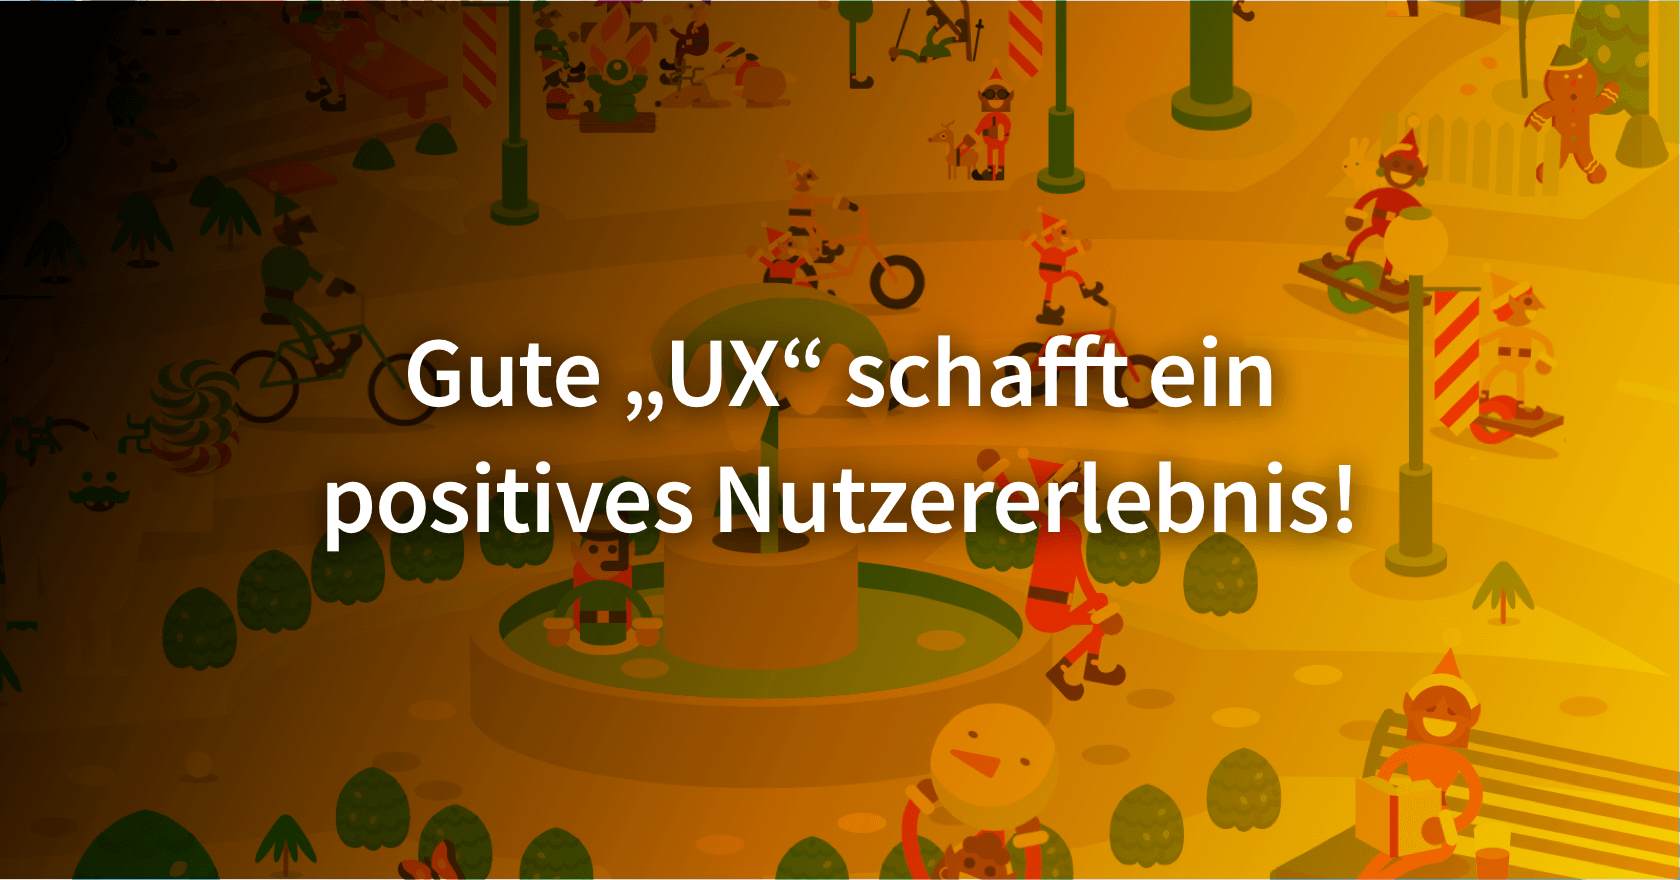 Grafik zum Thema "Gute UX schafft ein positives Nutzererlebnis!"